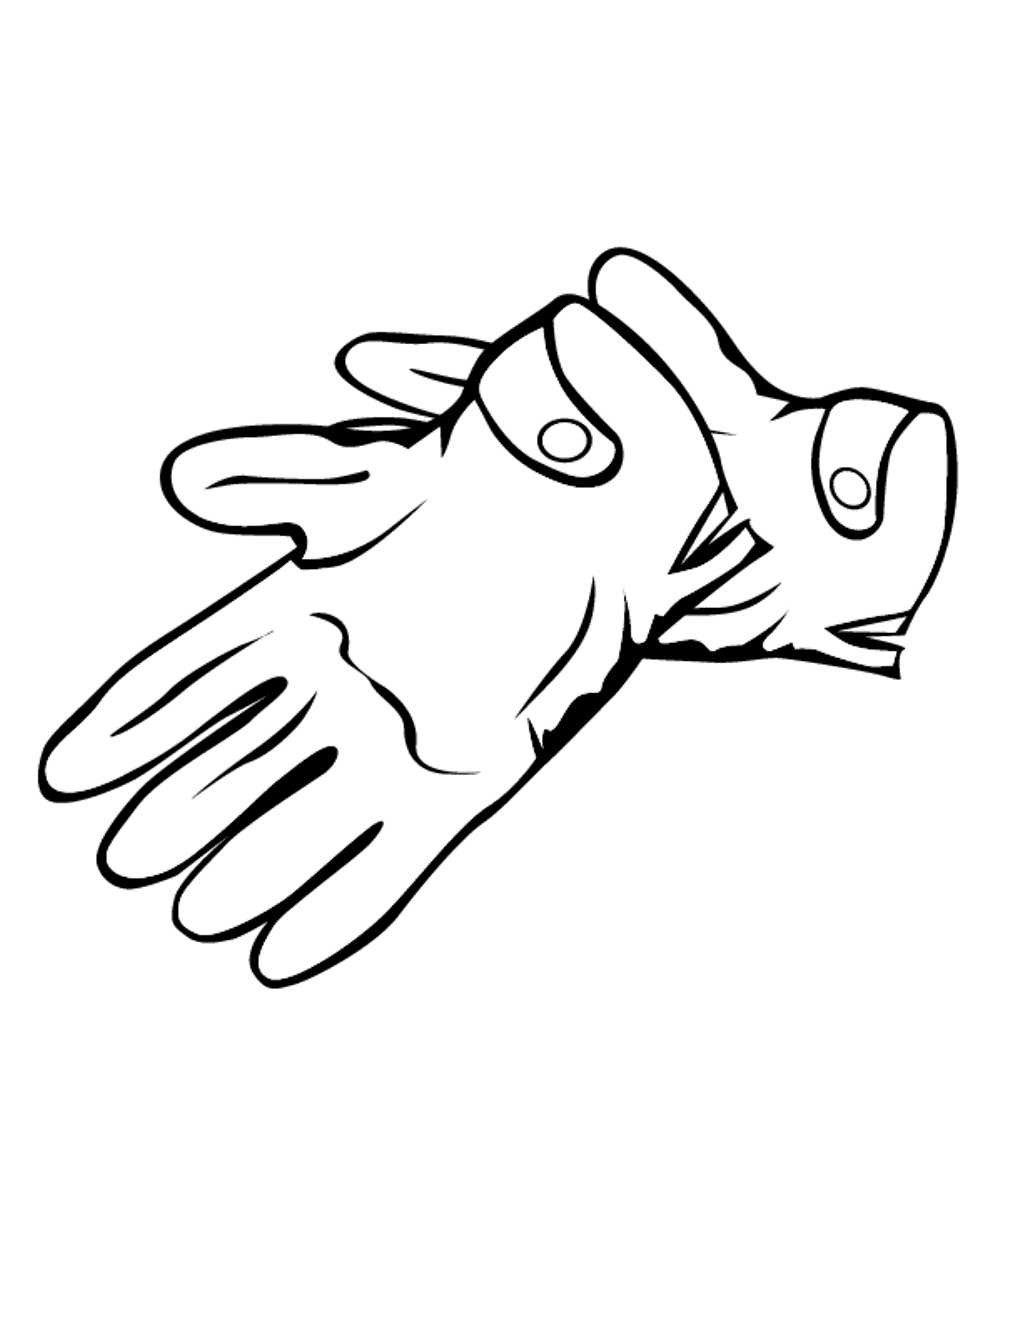 Резиновые перчатки раскраска